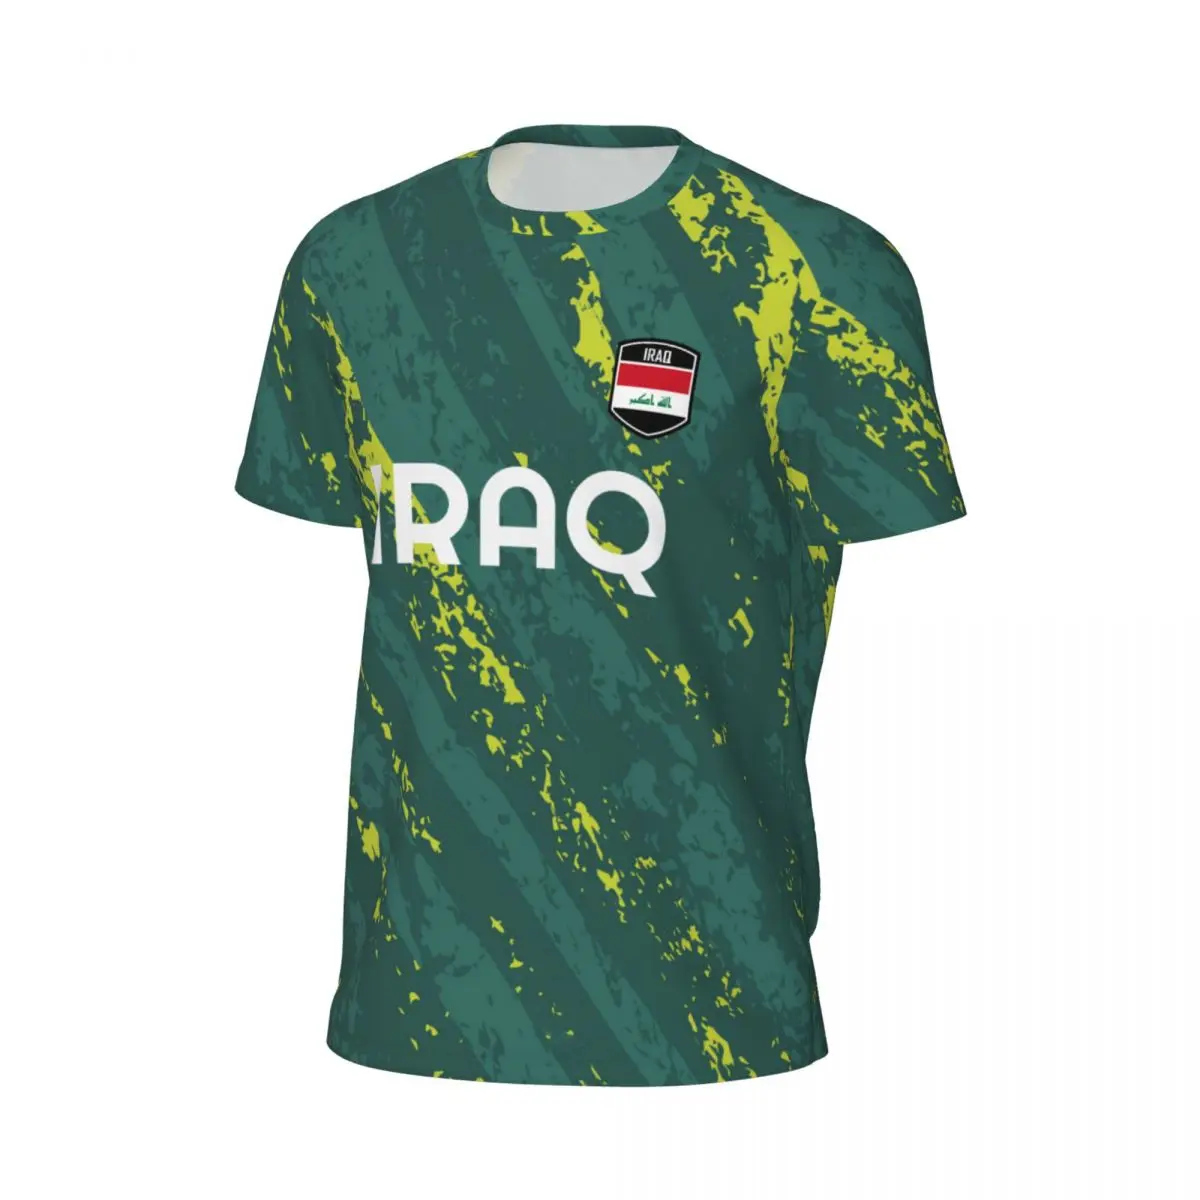 Irák standarta 3D potištěné T košile muži léto s krátkými rukávy pletivo tričko pro socce běžecký jízdní kolo tenis fitness fanoušci